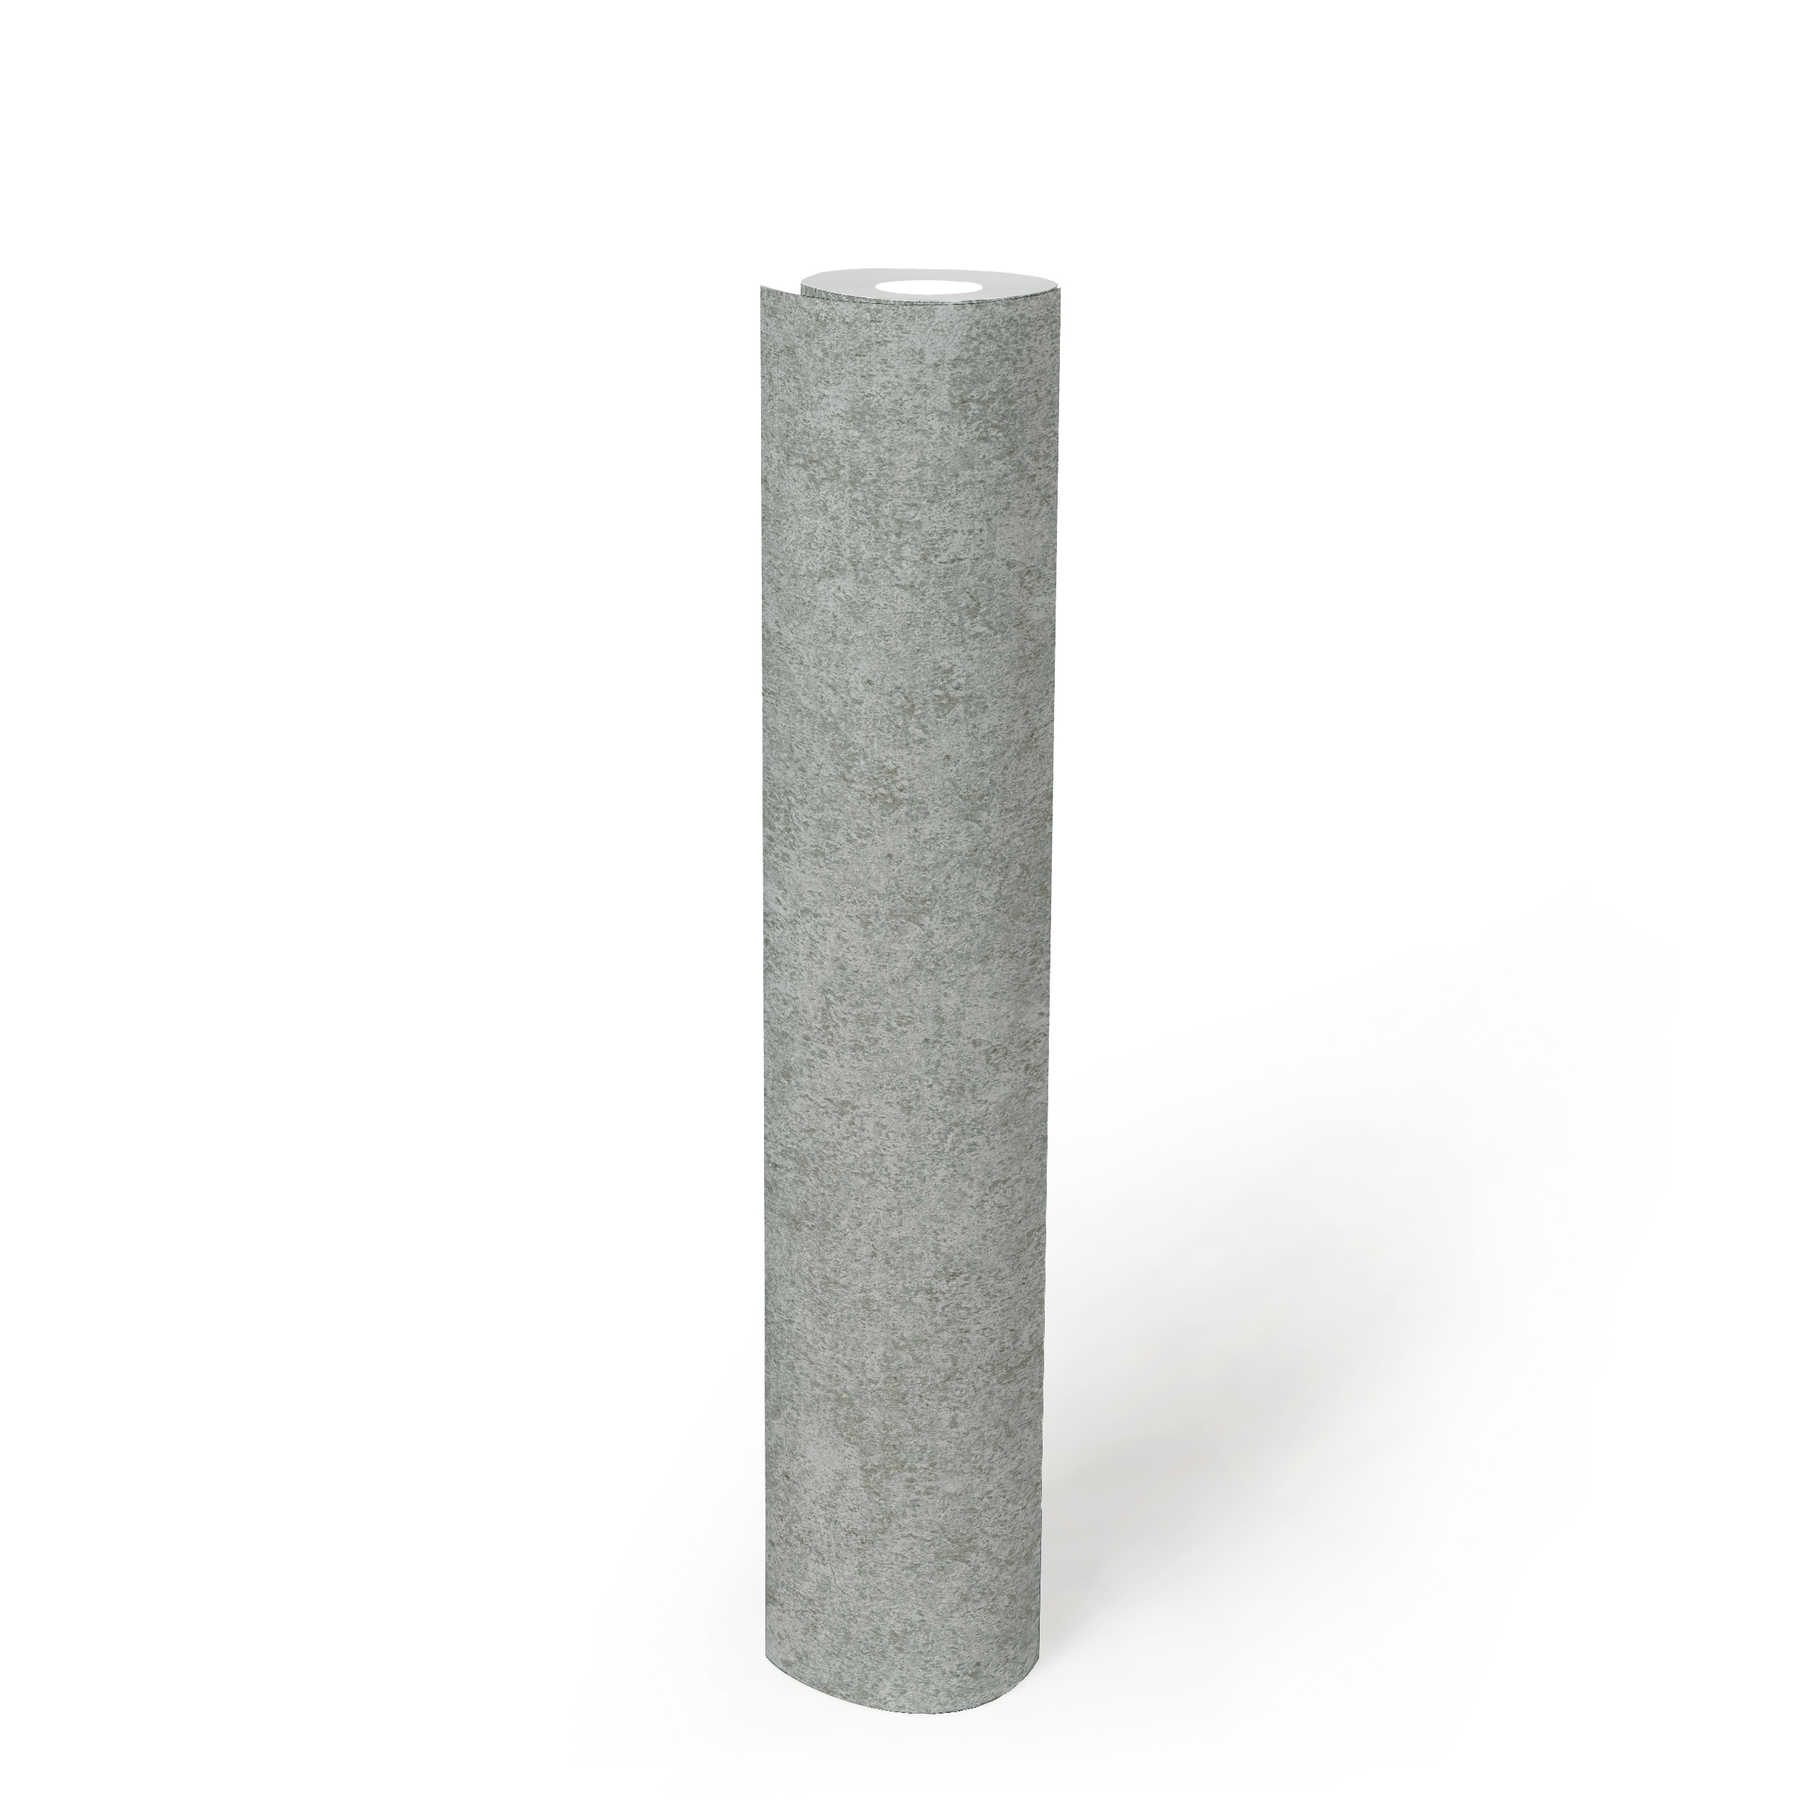             Unit behang grijs met gevlekte natuursteen look
        